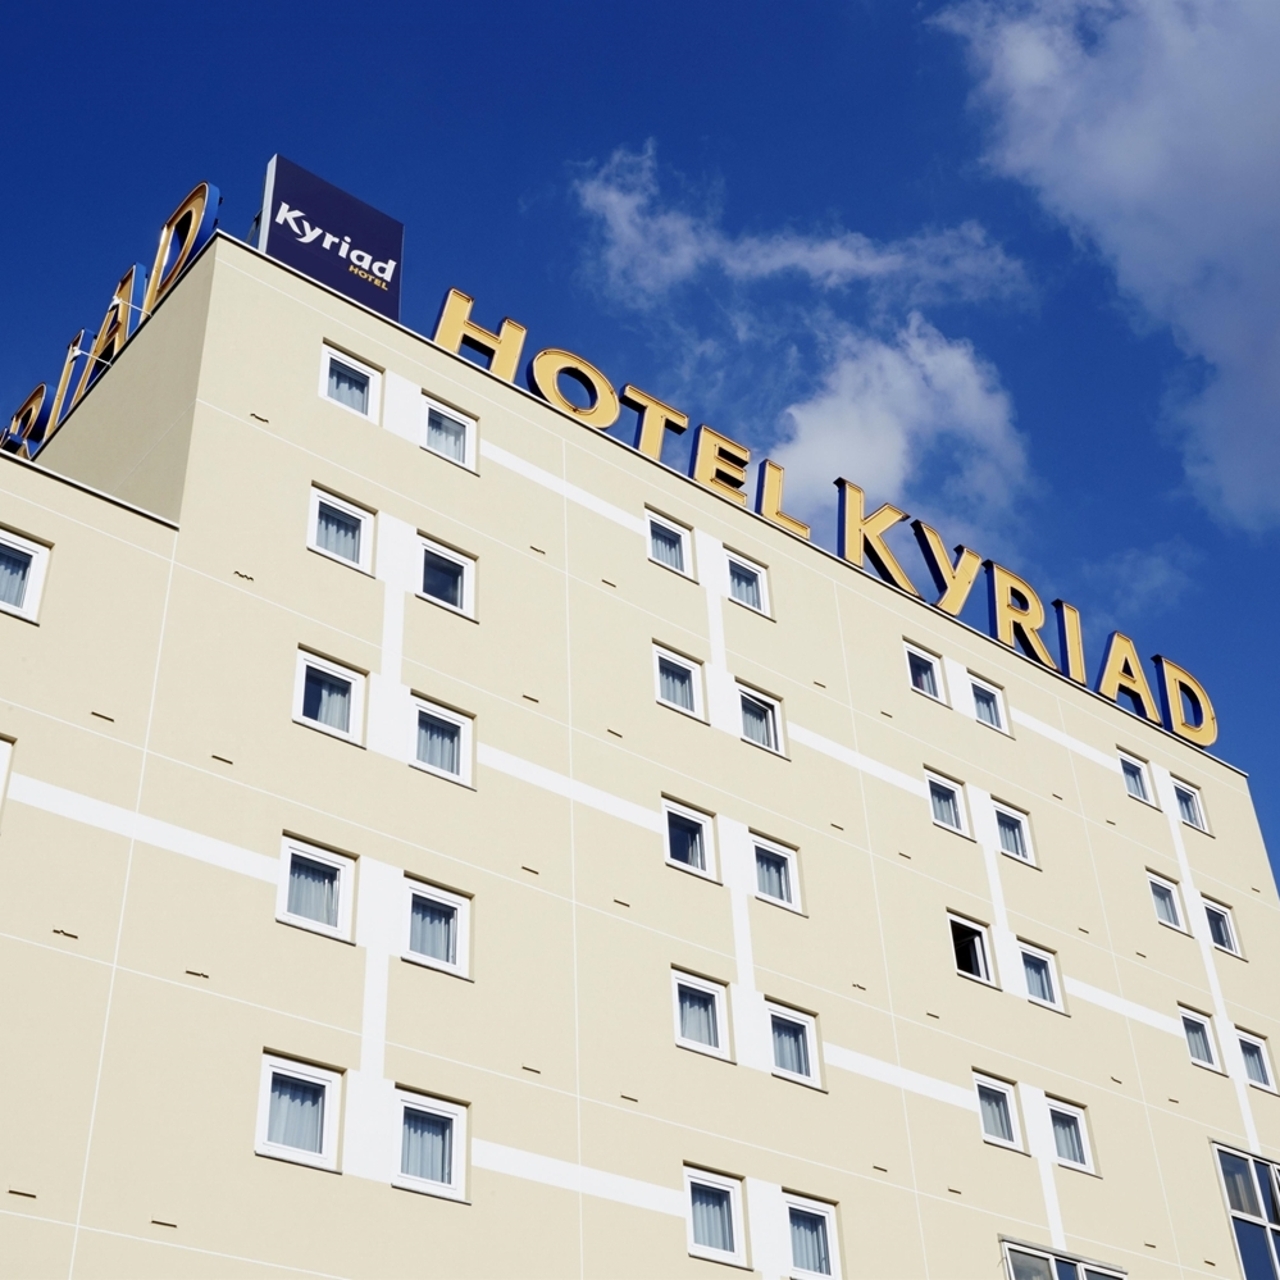 Comfort Hotel Paris Porte dIvry Ivry-sur-Seine réserver à bas prix avec HRS